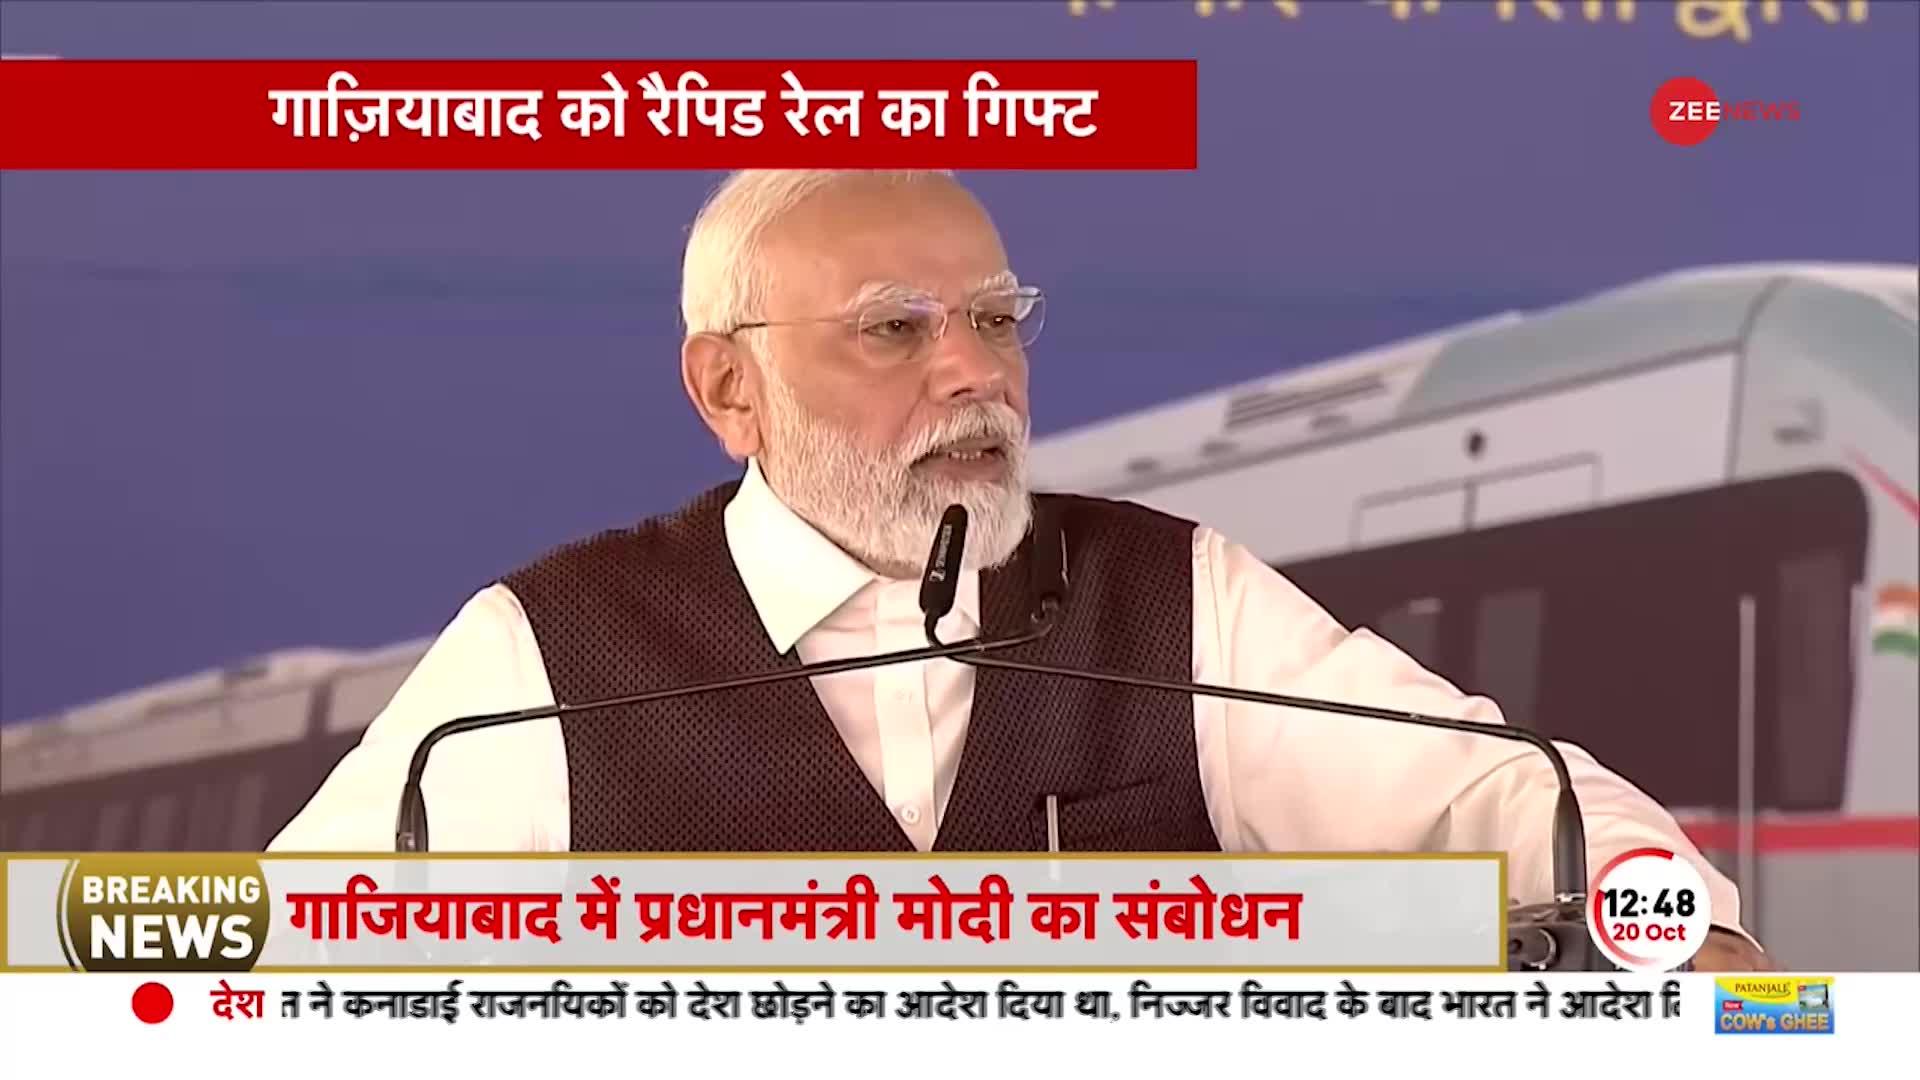 PM Modi LIVE: नारी शक्ति को मोदी का नमन, Rapid Rail में ड्राइवर से लेकर स्टाफ तक